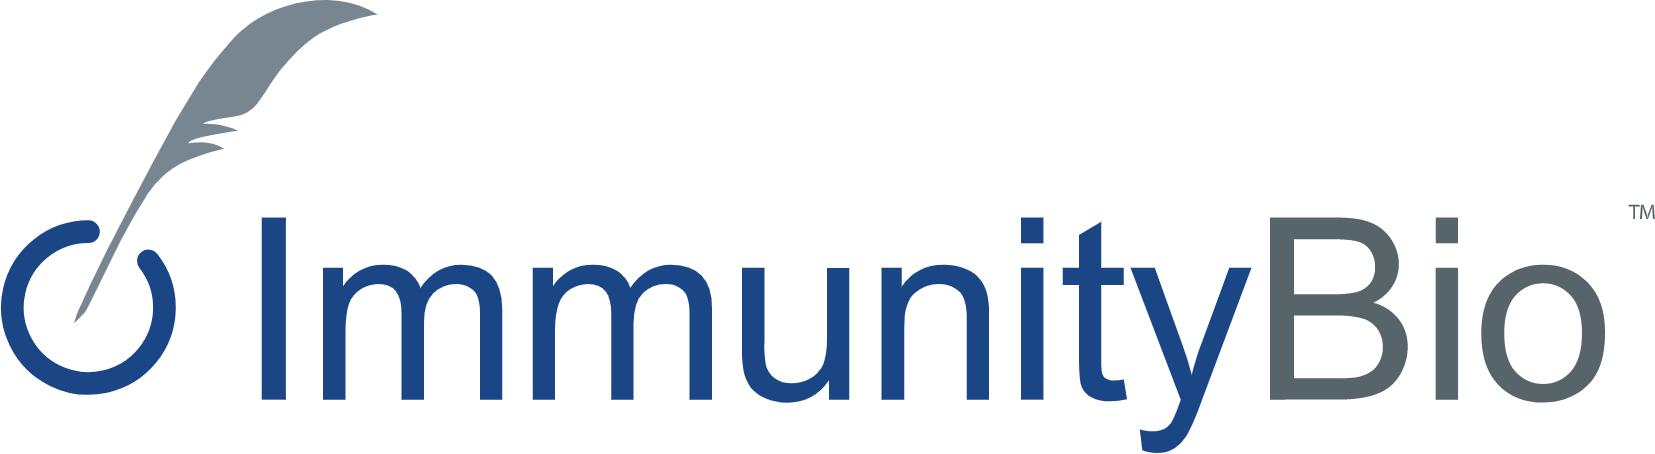 ImmunityBio logo large (transparent PNG)